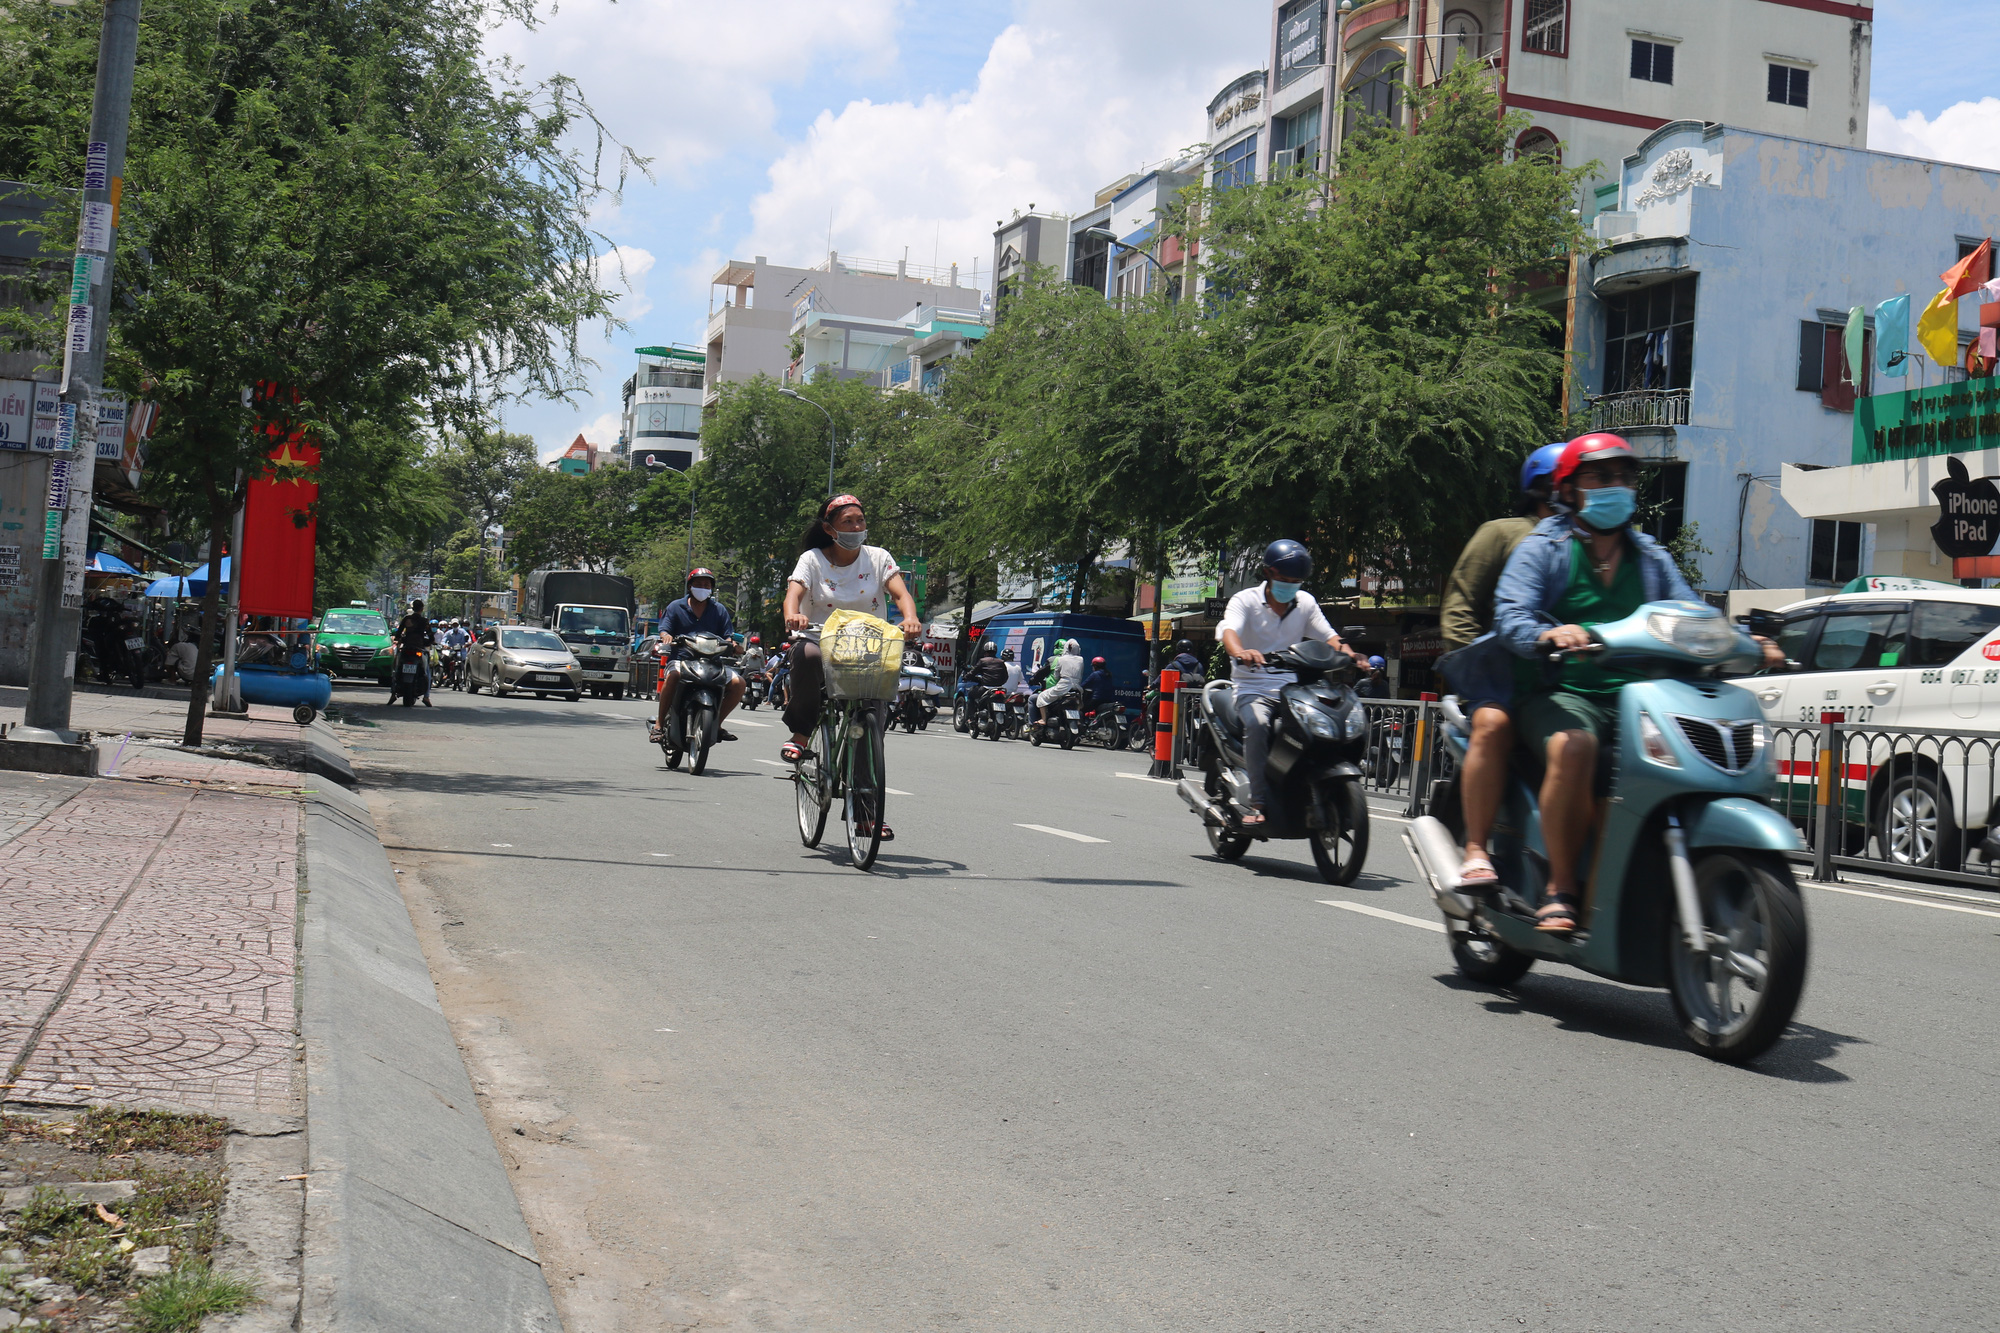 Hình ảnh Đinh Tiên Hoàng, Quận 1, Hồ Chí Minh